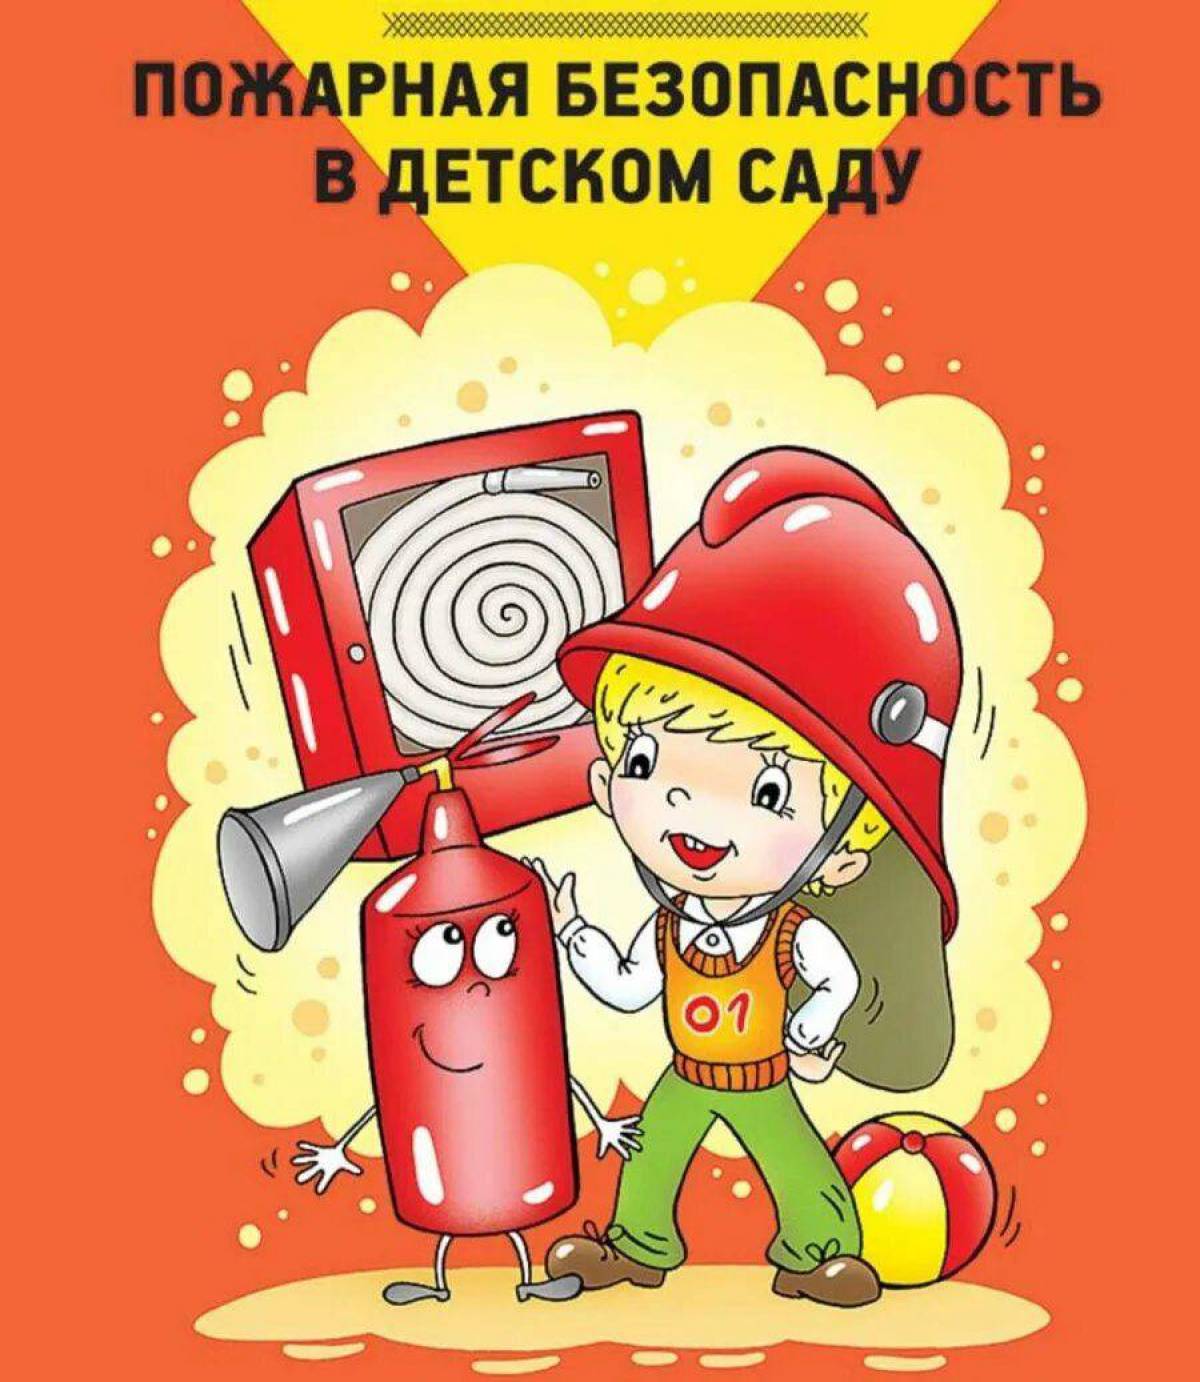 День пожарной безопасности в детском саду. Пожарная безопасность в детском саду. Пожарная безопасность для детей в детском саду. Пожарная безопастность. Книги для детей по пожарной безопасности в детском саду.